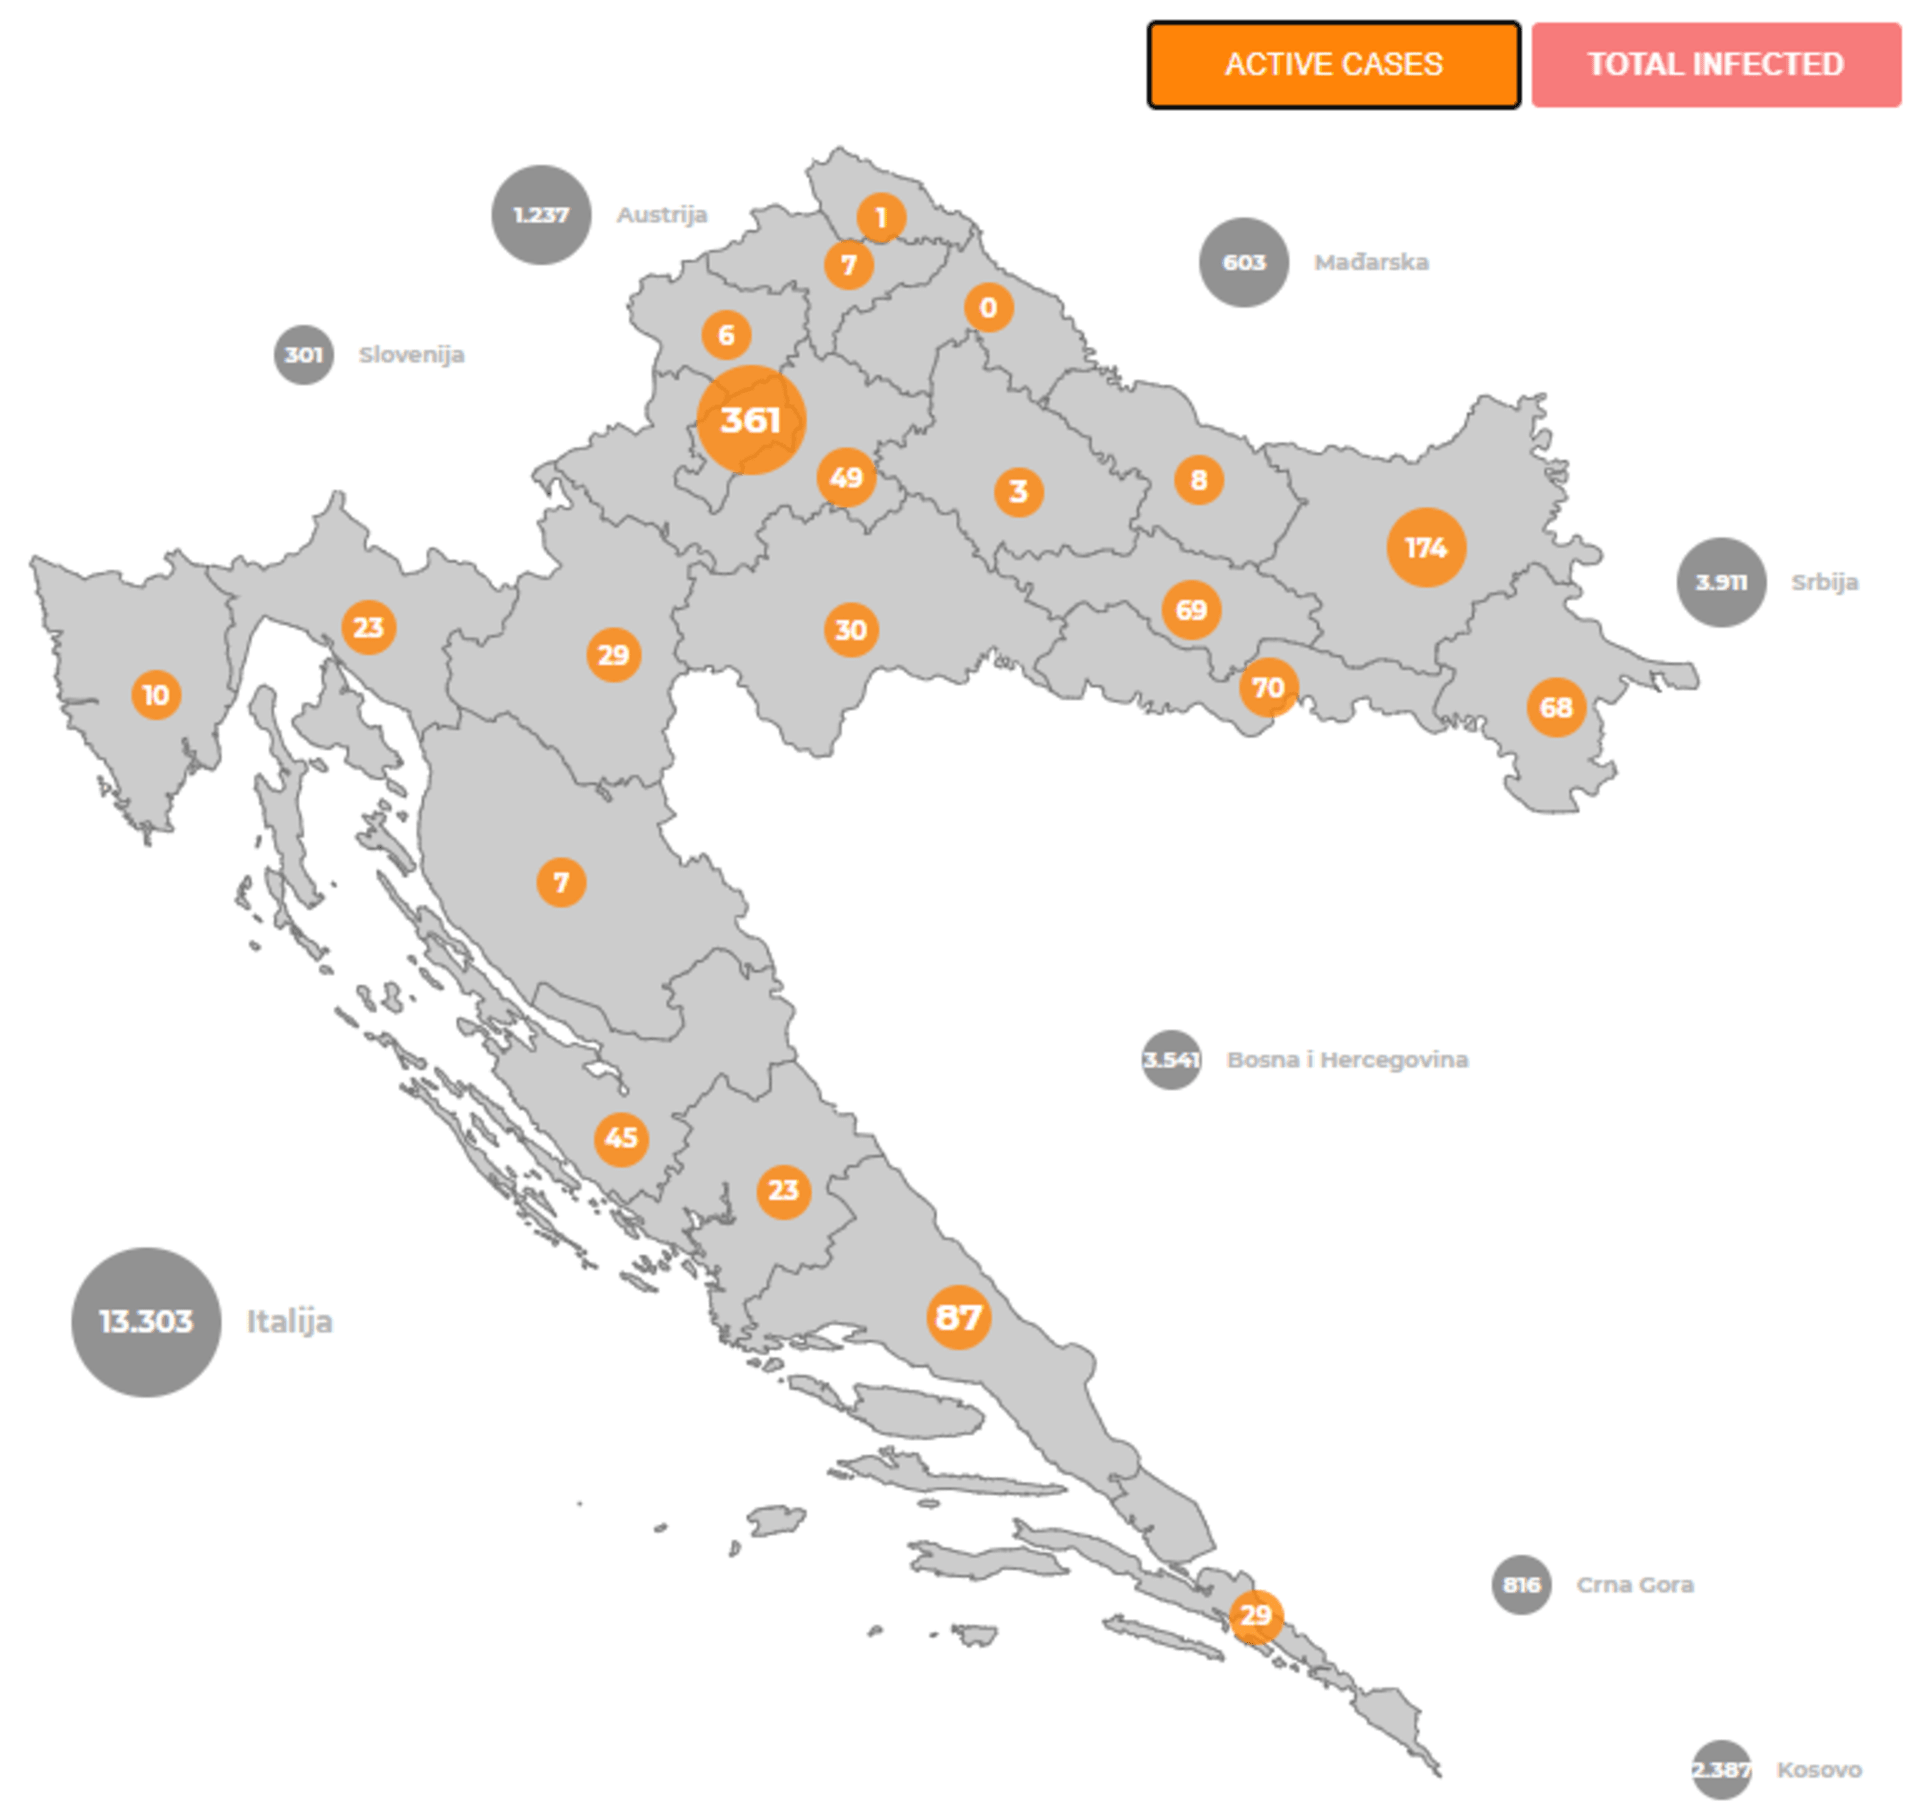 Aktivní případy nákazy v jednotlivých částech Chorvatska (zdroj: chorvatská vláda)